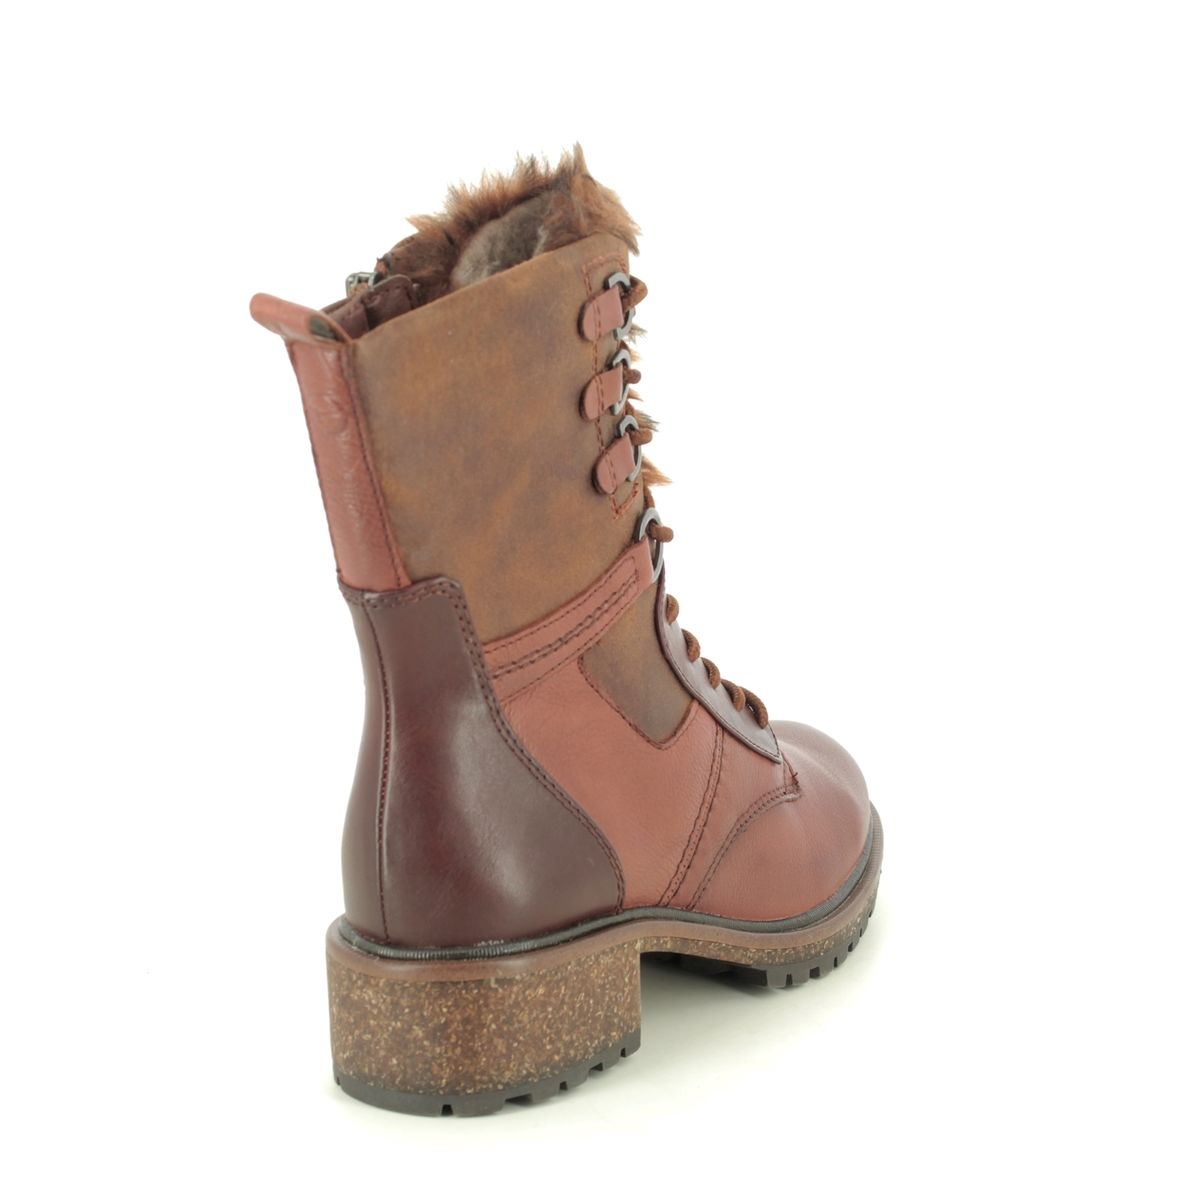 Tamaris Abinatalues 26212-25-306 Tan Leather Lace Boots